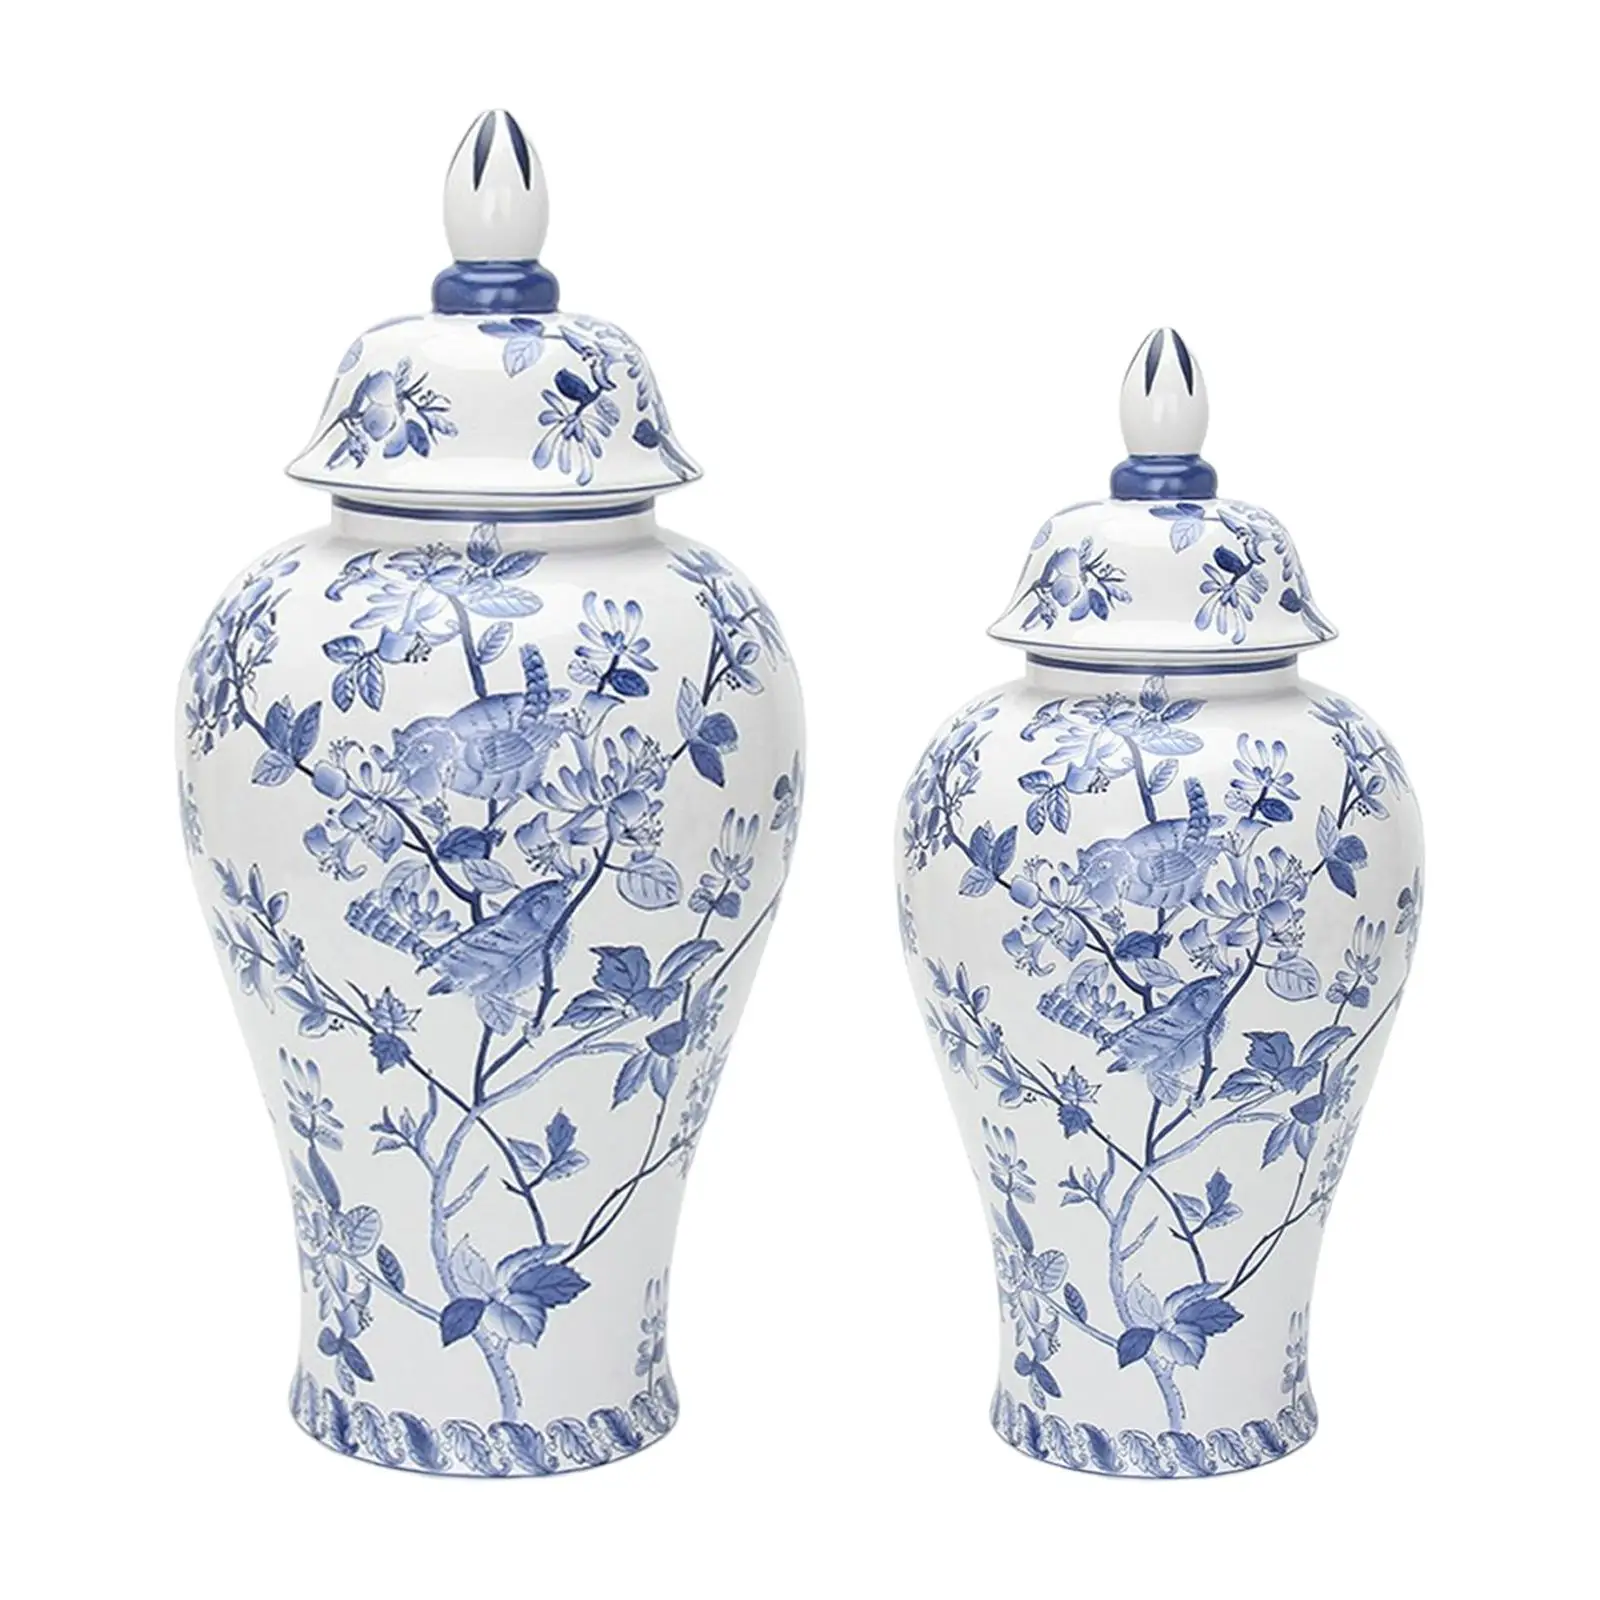 Ceramic Flower Vase Handicraft Decor Porcelain Ginger Jar for Collection